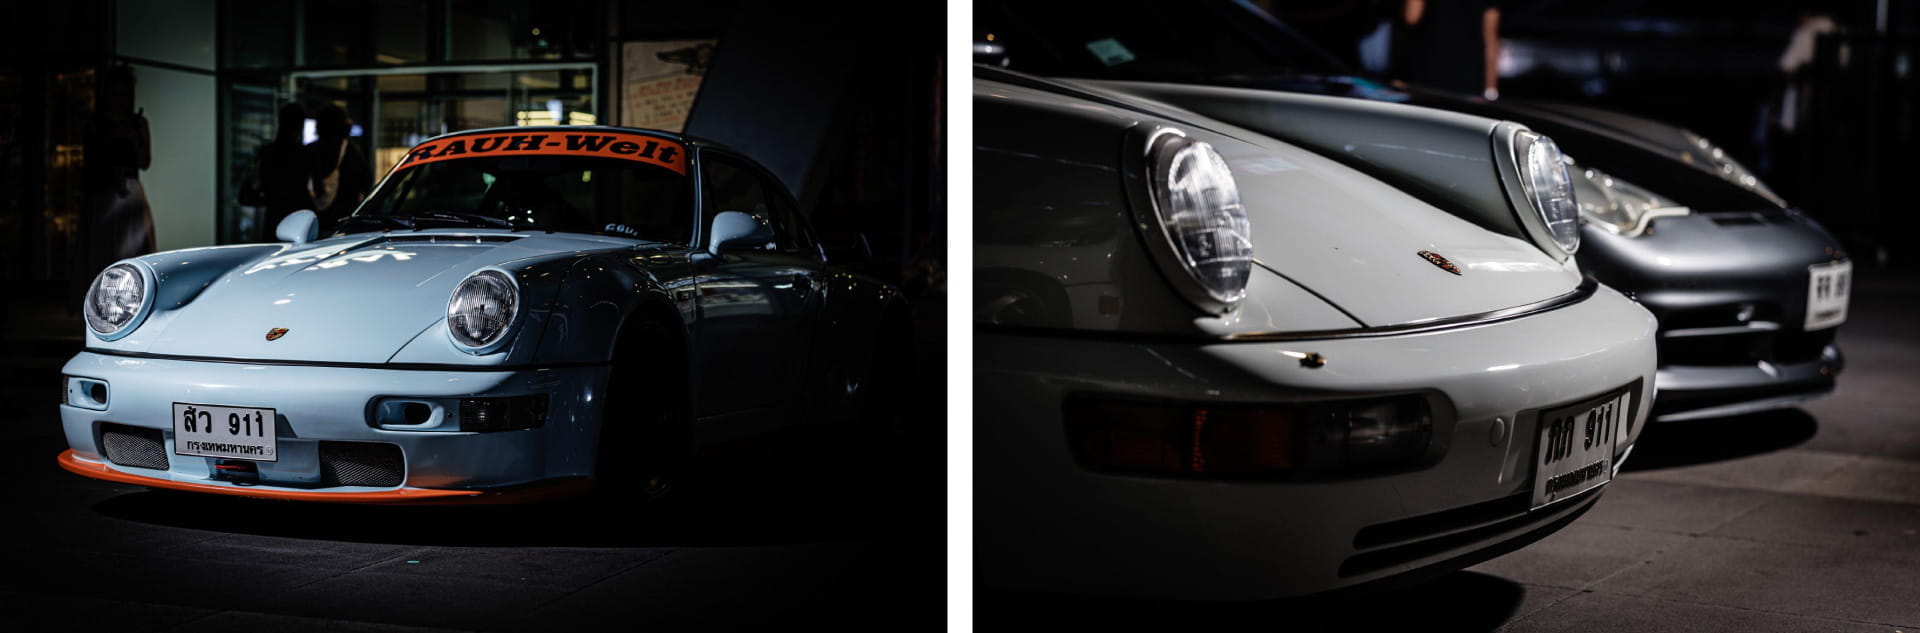 Porsche Turbo Pop-Up Exhibition